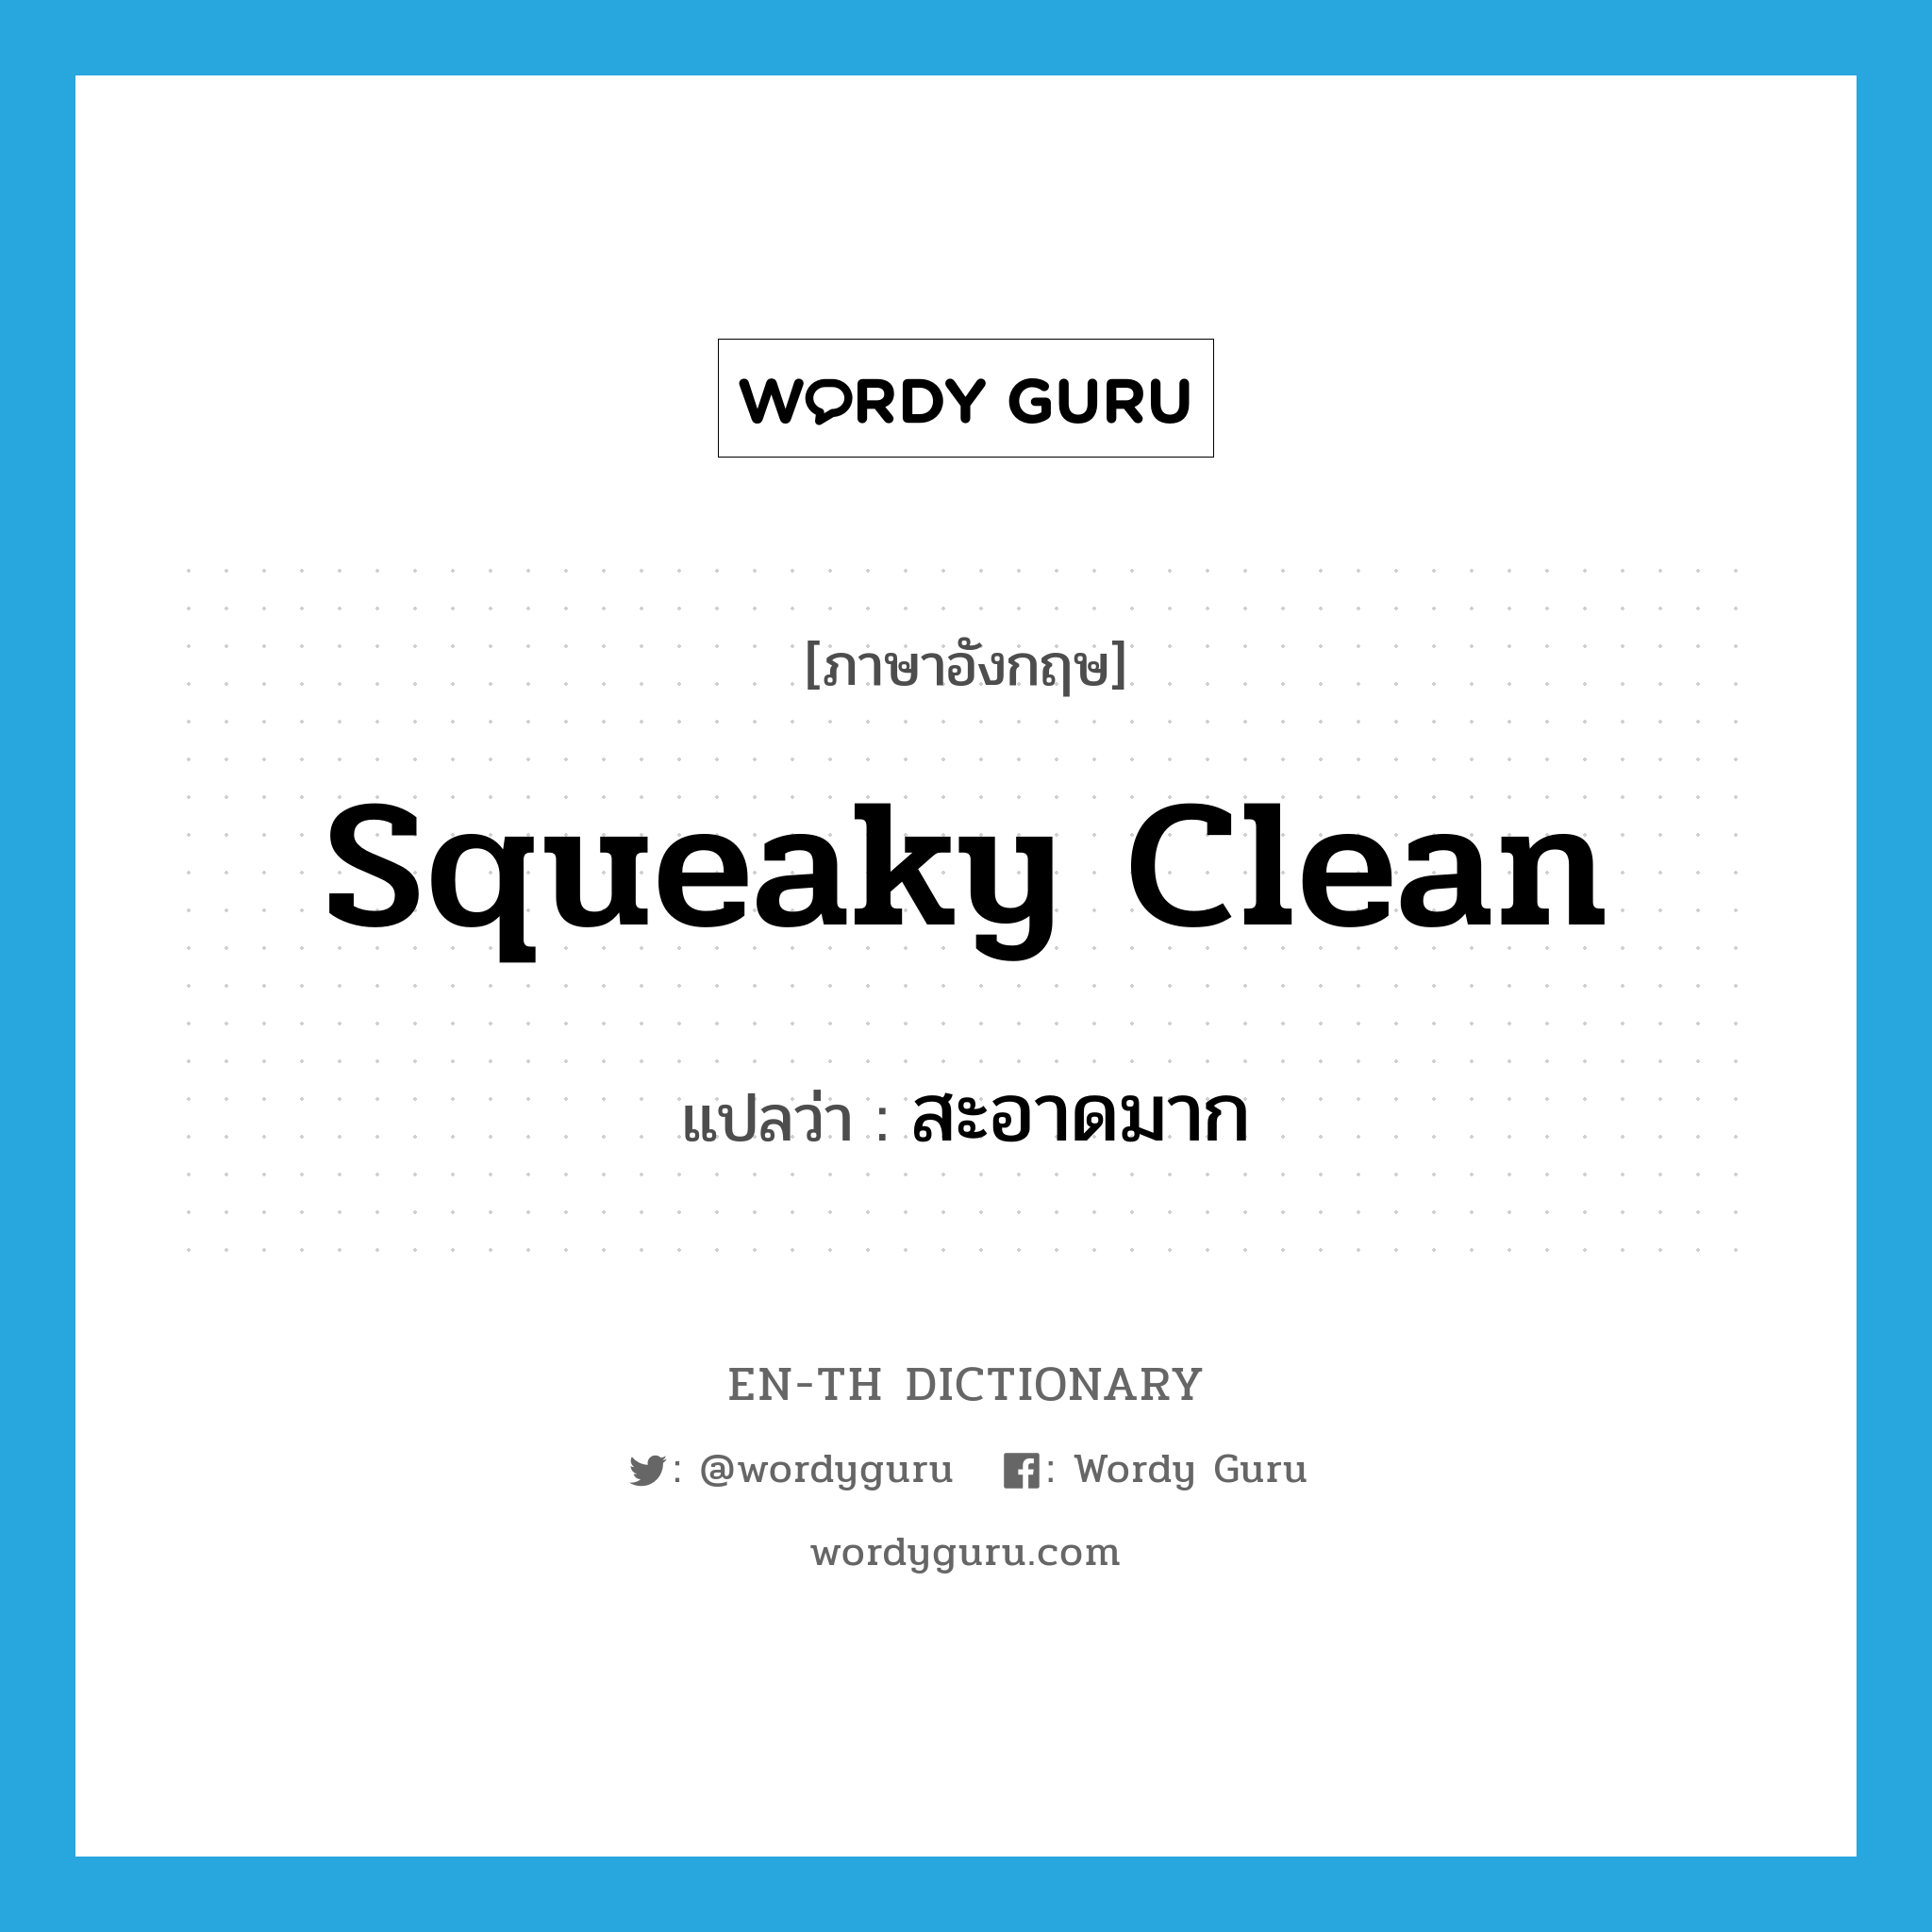 สะอาดมาก ภาษาอังกฤษ?, คำศัพท์ภาษาอังกฤษ สะอาดมาก แปลว่า squeaky clean ประเภท SL หมวด SL